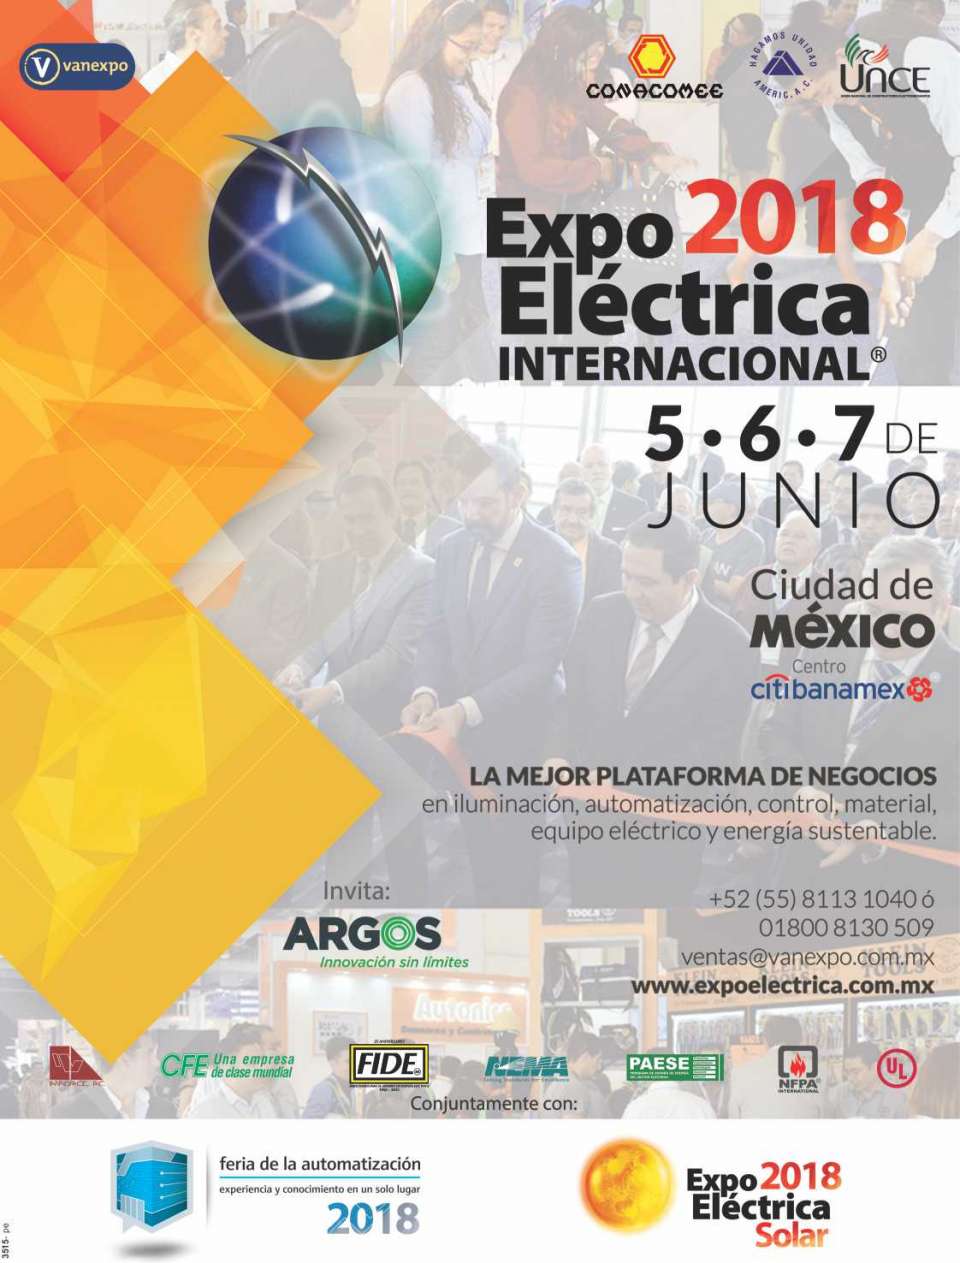 EXPO ELECTRICA INTERNACIONAL Ciudad de 
Mexico del 5 al 7 de Junio 2018 en 
Centro Banamex


